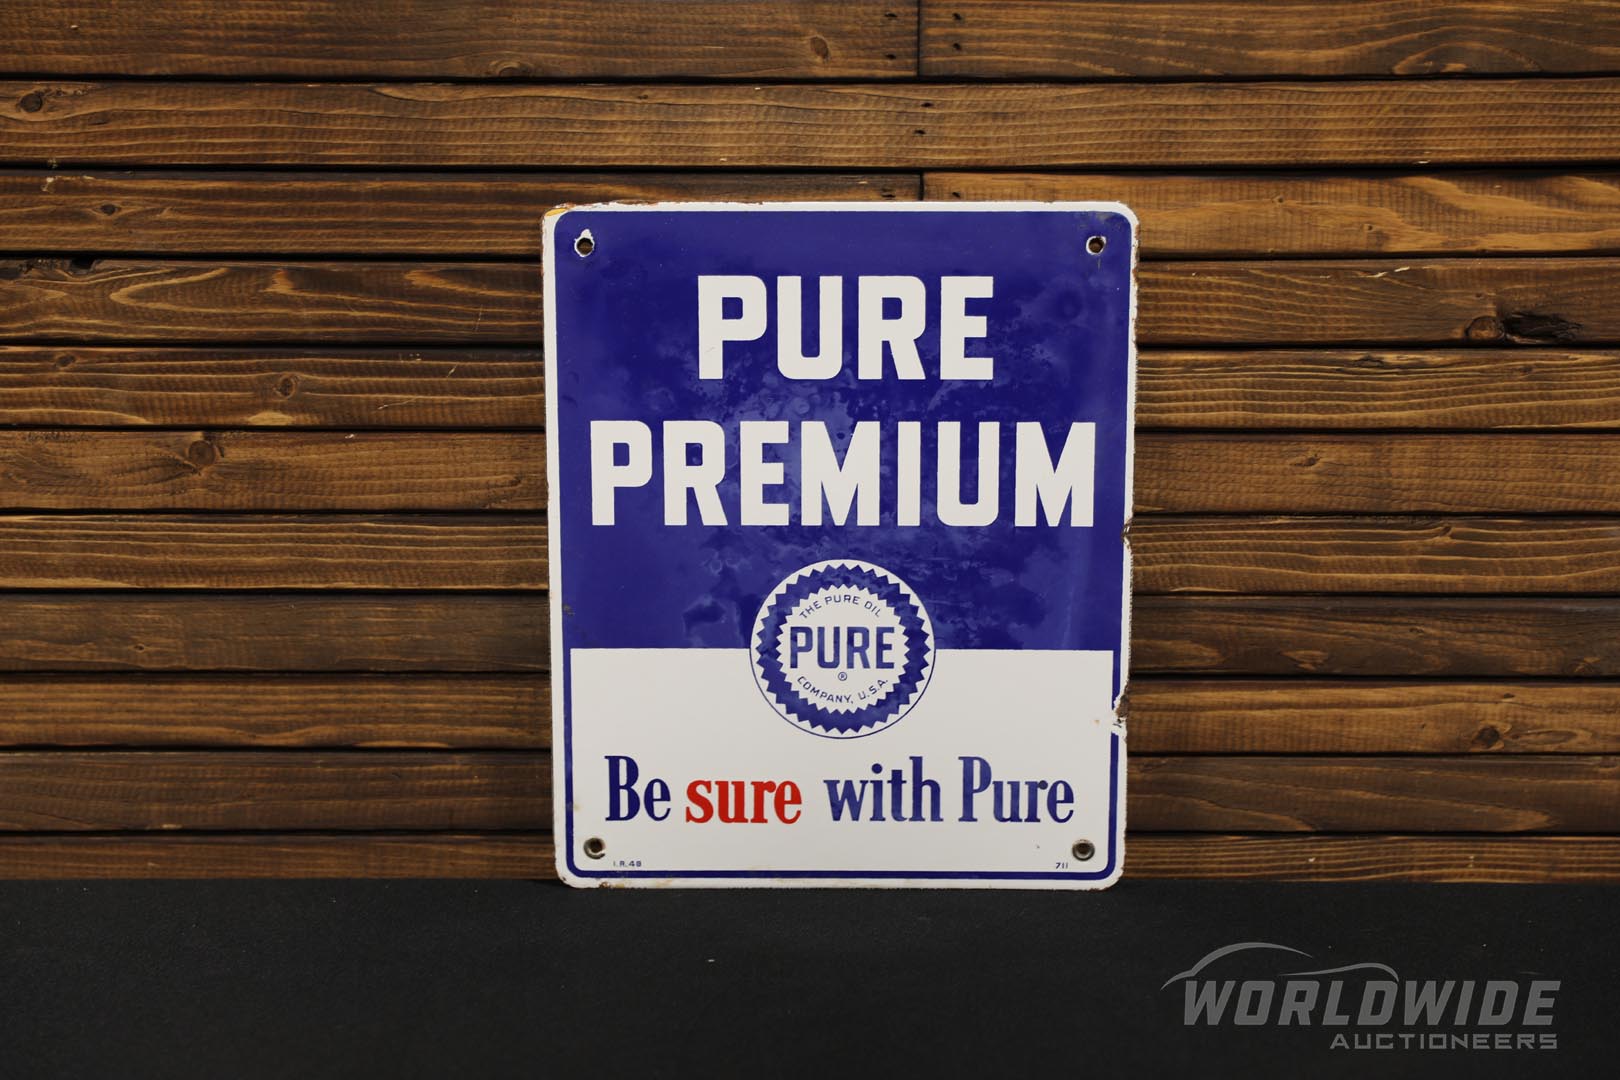  Pure Premium Gasoline Single-S ided Porcelain Pump Plate  